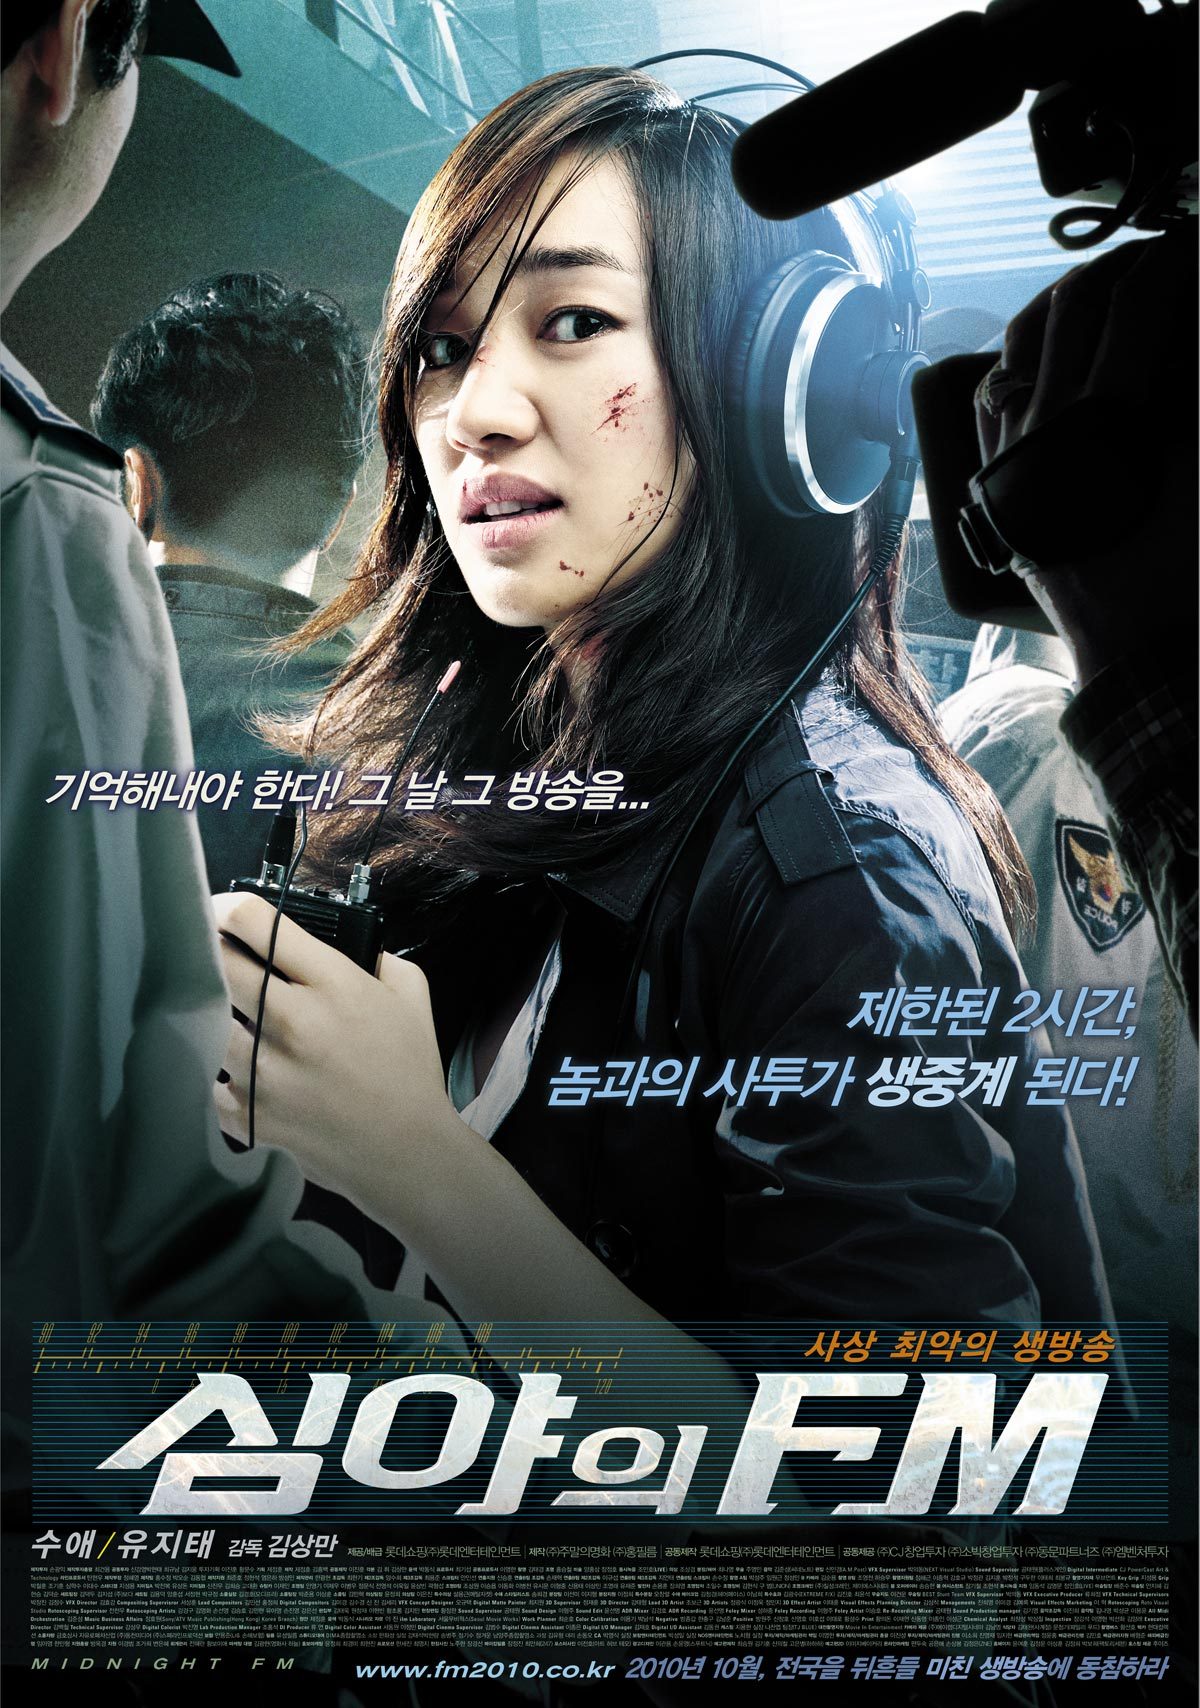 korean serial killer movies - Midnight FM